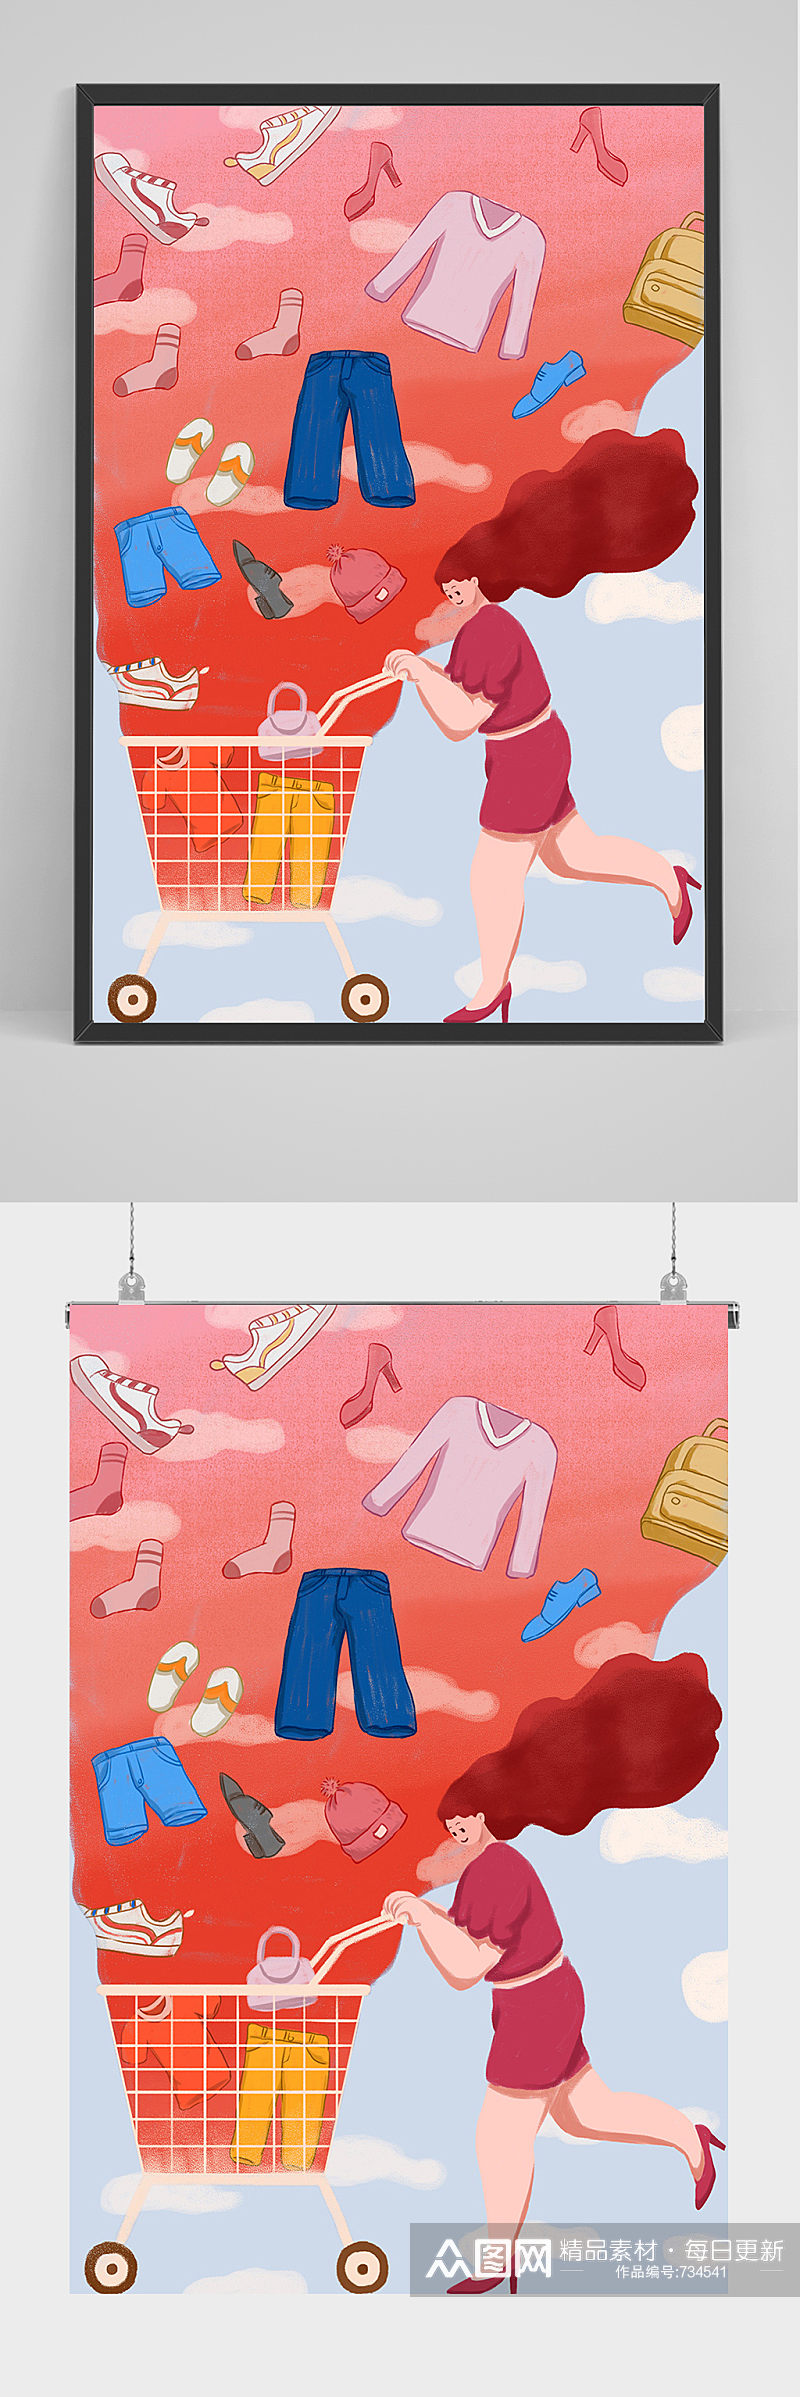 精品手绘女子推着购物车插画设计素材